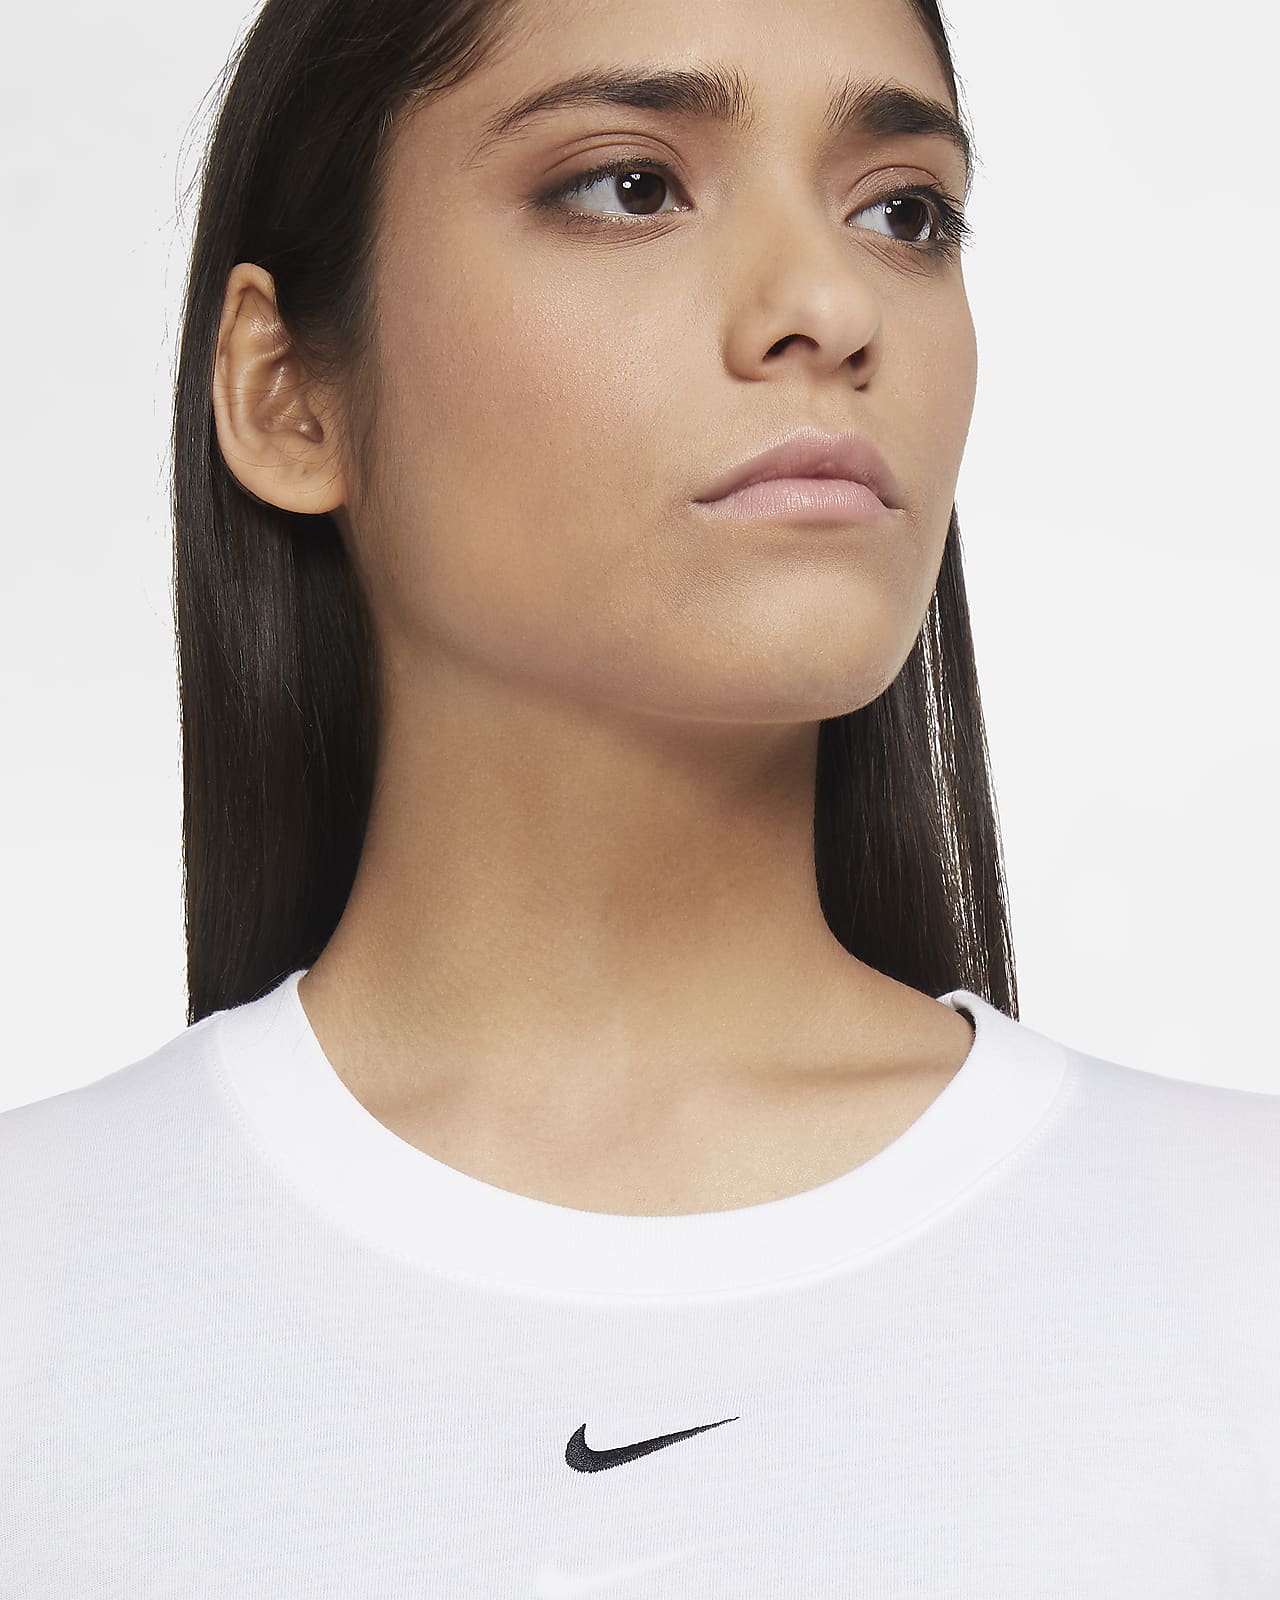 T-shirt Nike pour femme